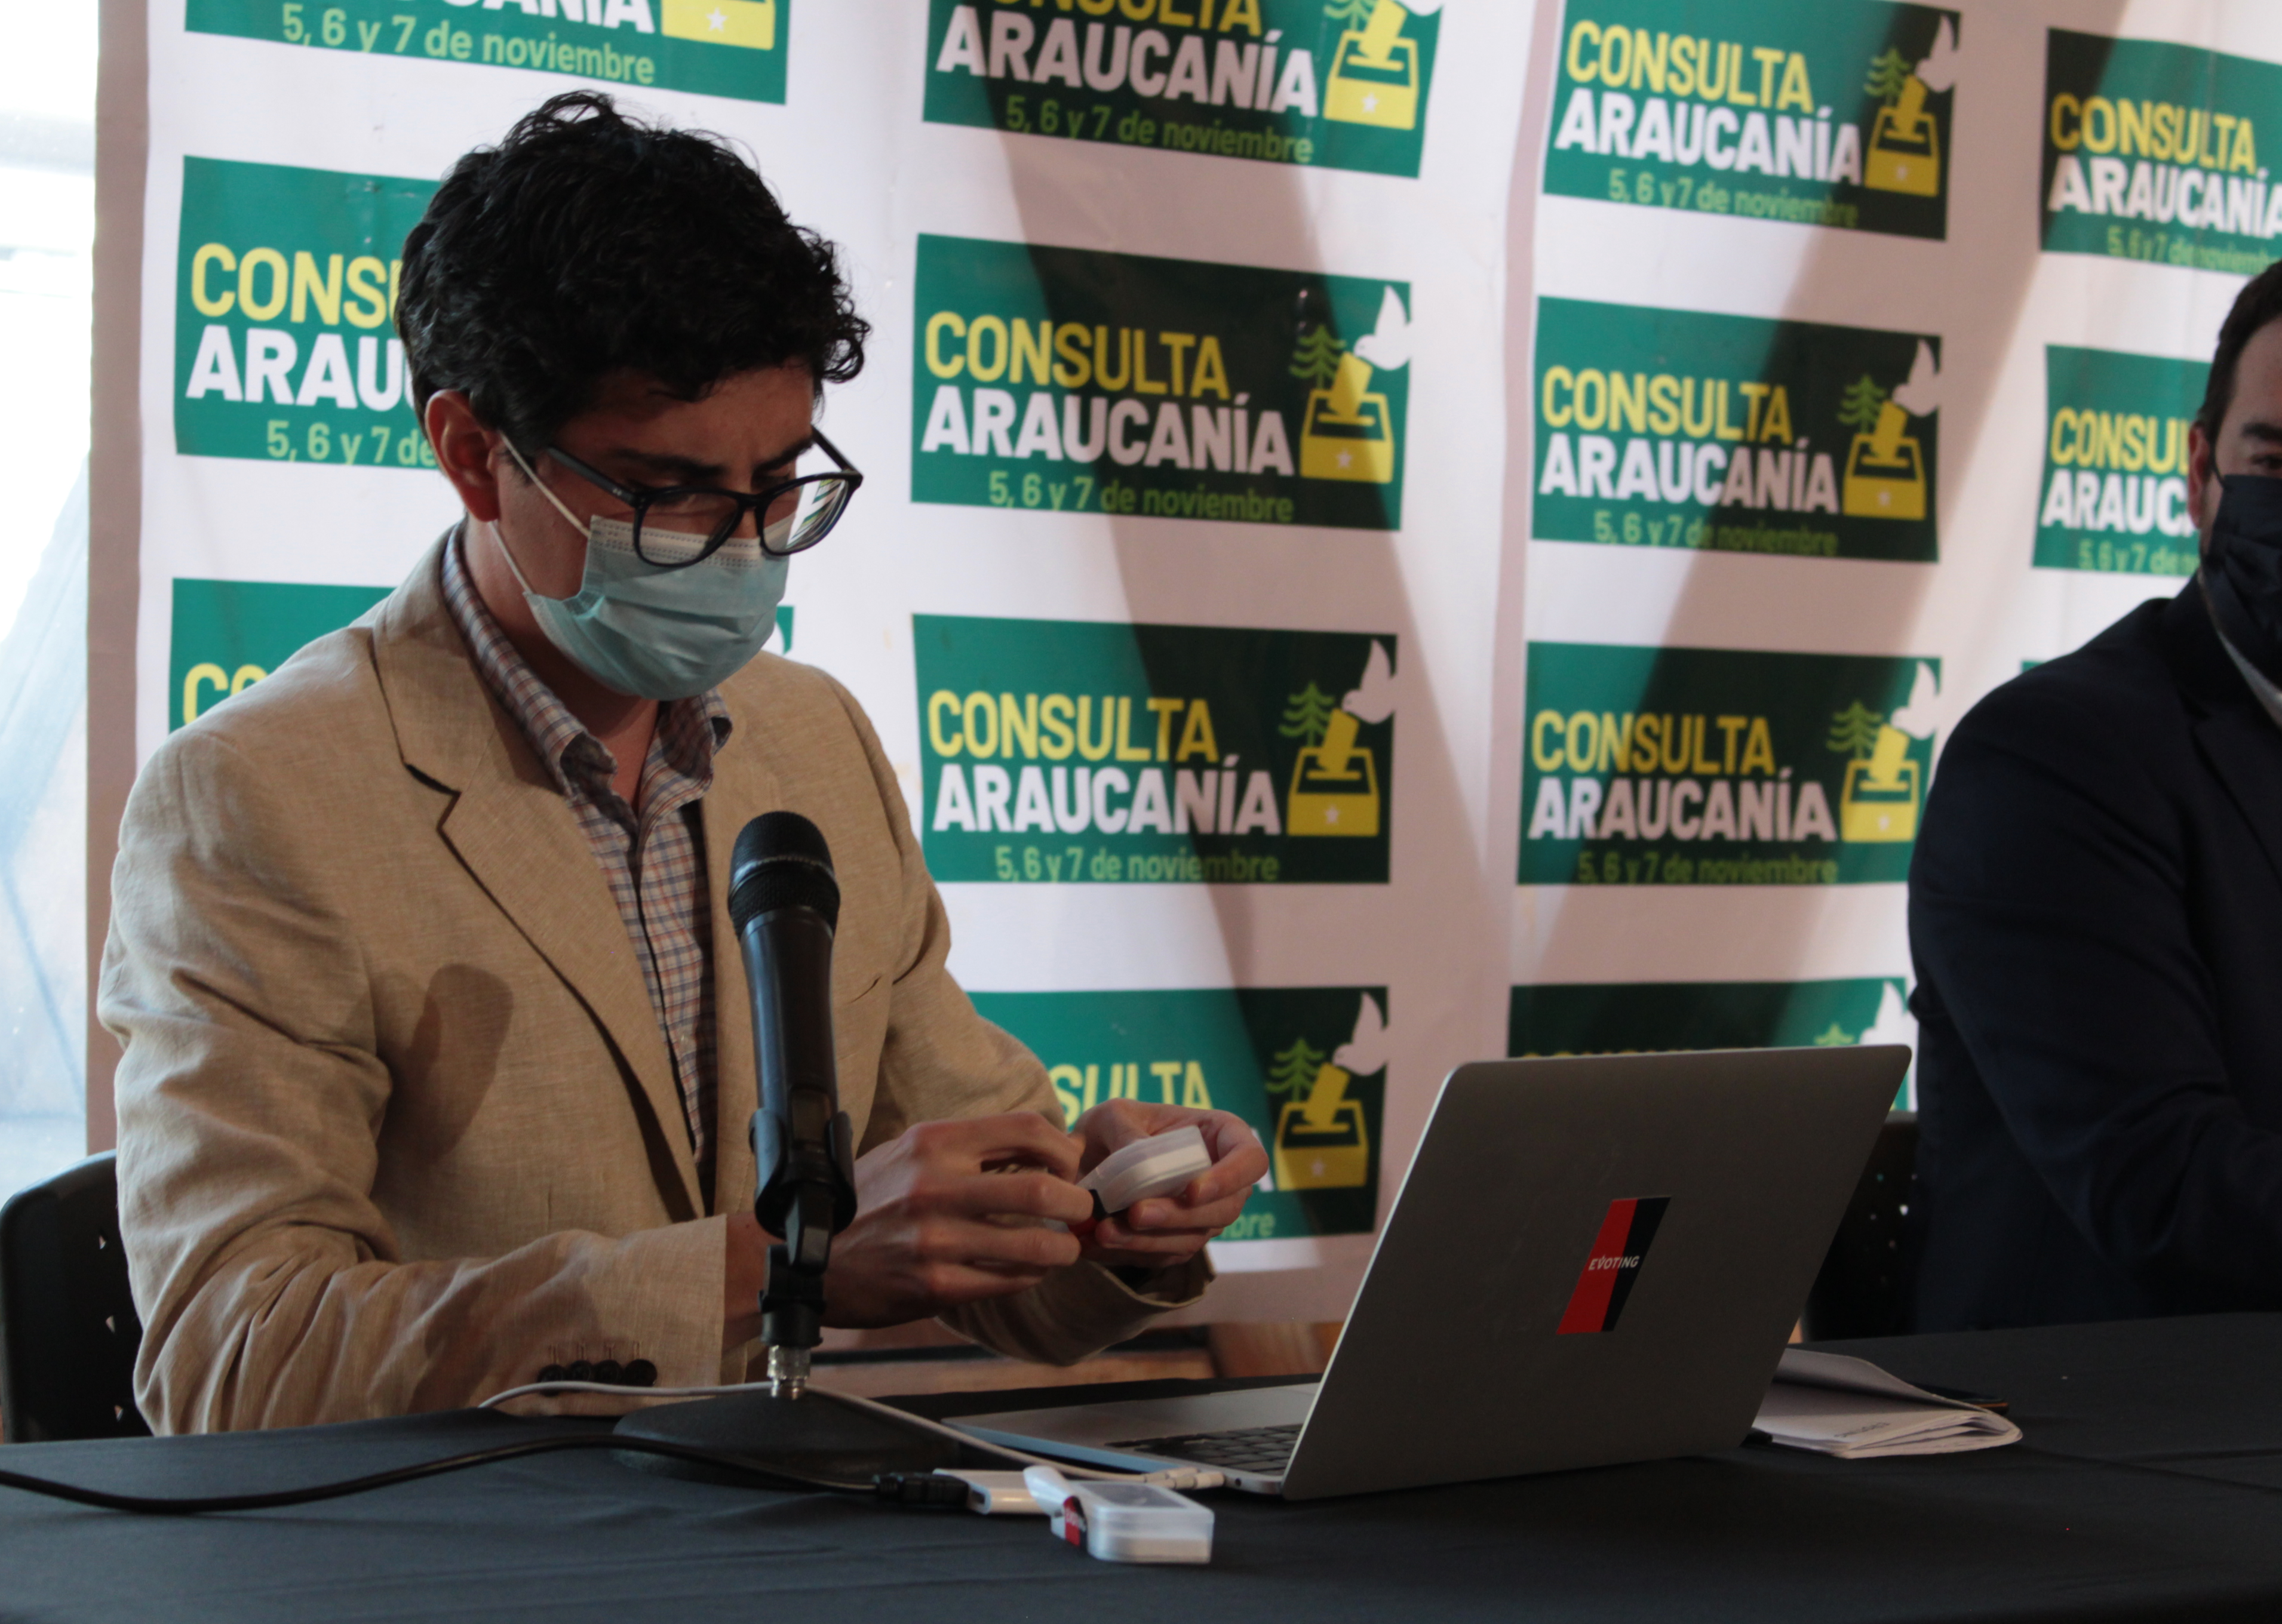 Felipe Lorca, Gerente de Operaciones de EVoting, en ceremonia de escrutinio en la Consulta de la Araucanía